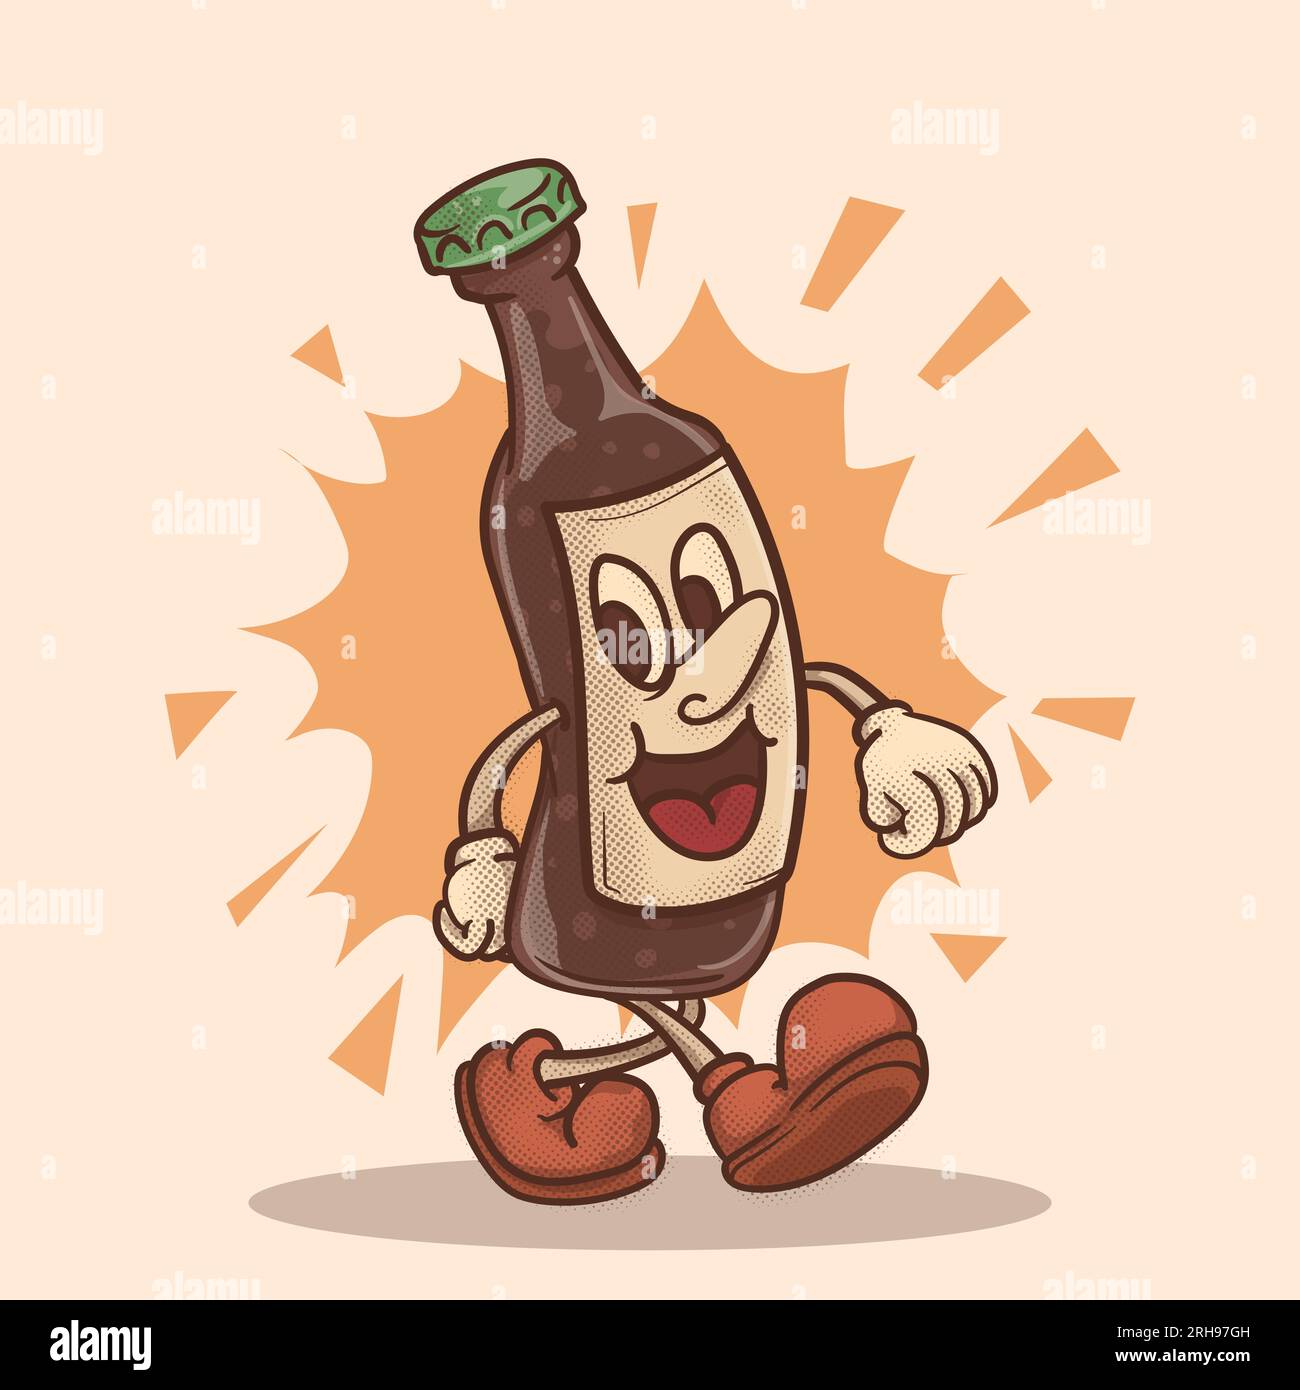 Wandelnde Bierflasche mit fröhlichem Zeichentrickgesicht. Flippiges Bier-Retro-Maskottchen Stock Vektor